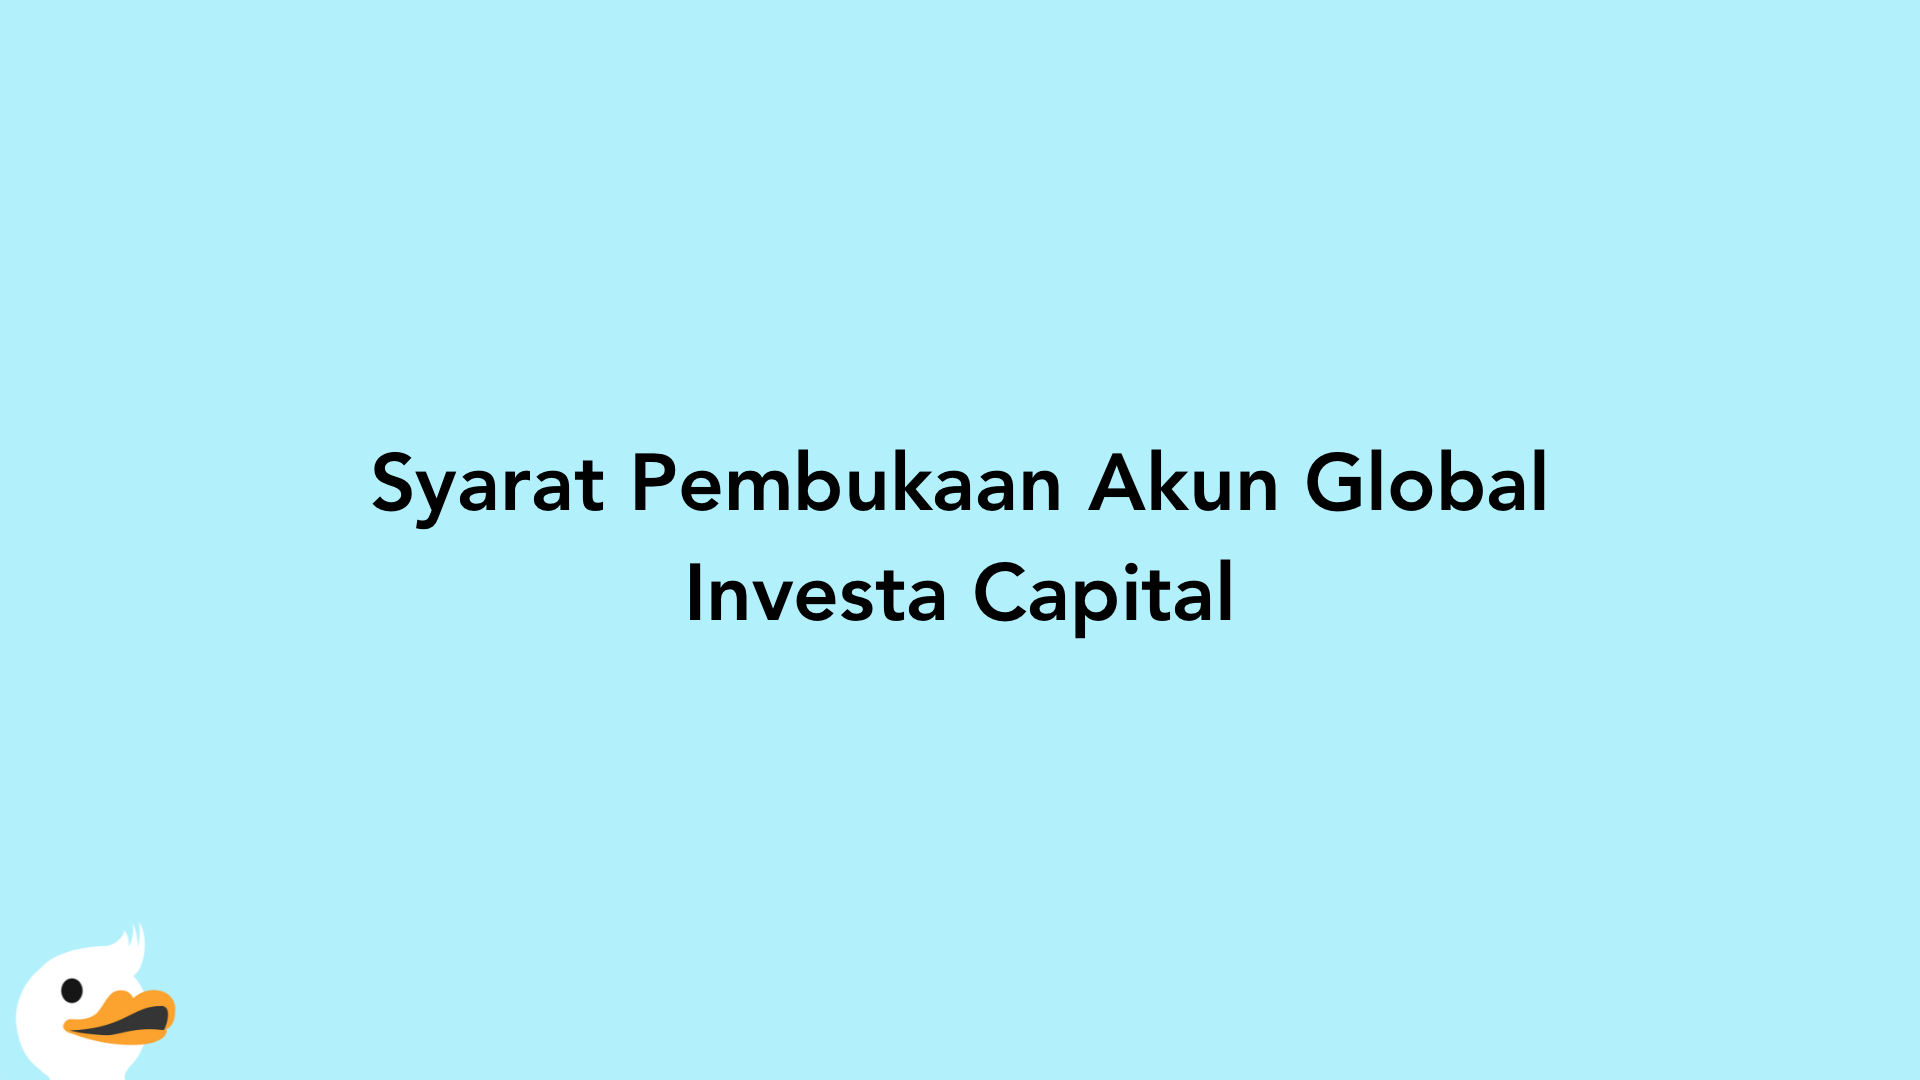 Syarat Pembukaan Akun Global Investa Capital